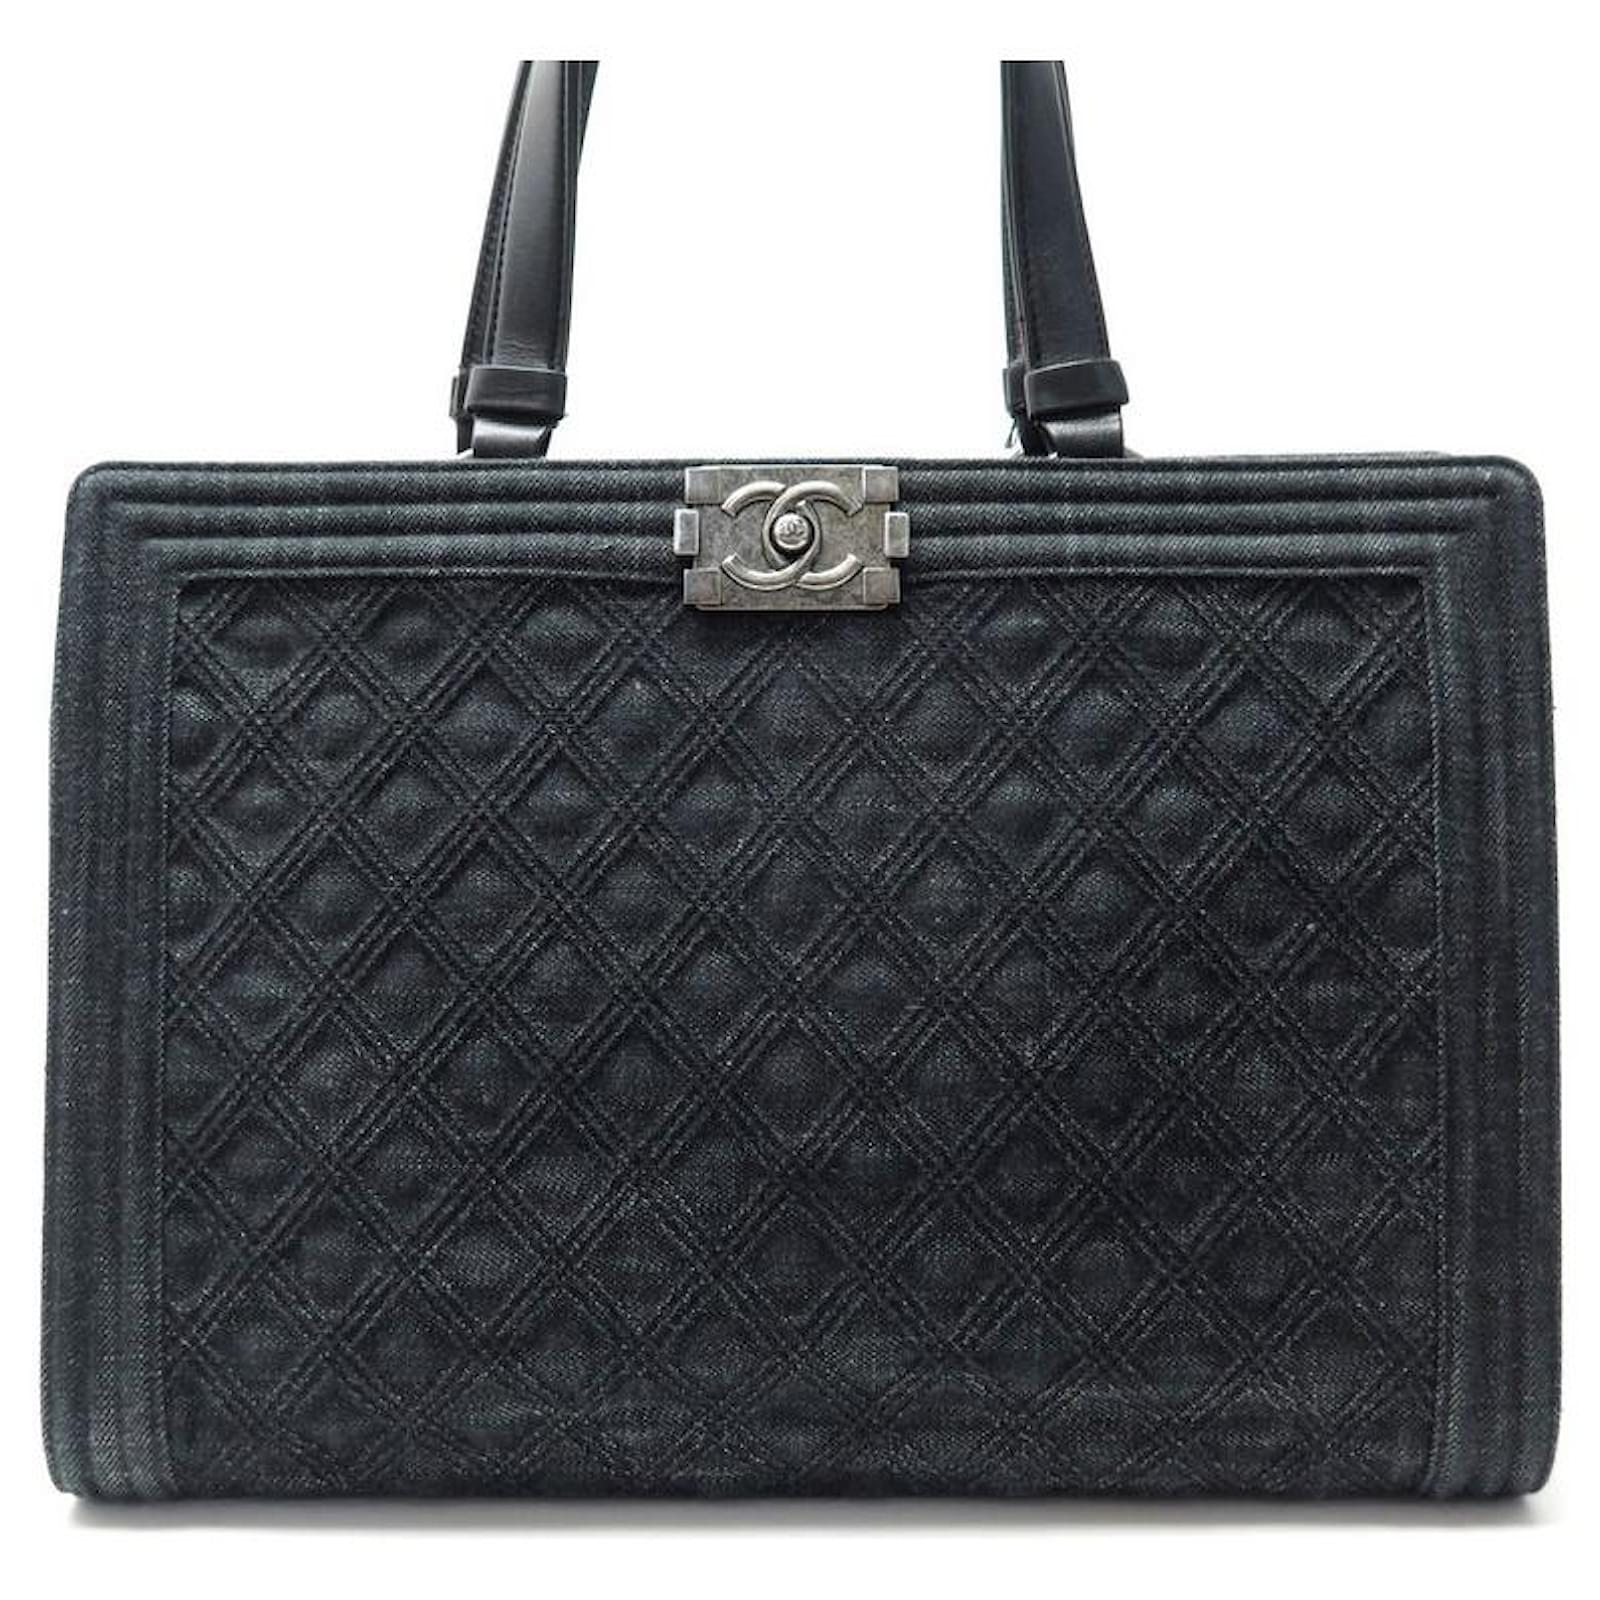 Handbags Chanel Chanel Boy Cabas Handbag 2015 2016 in Black Denim Black Tote Bag Purse